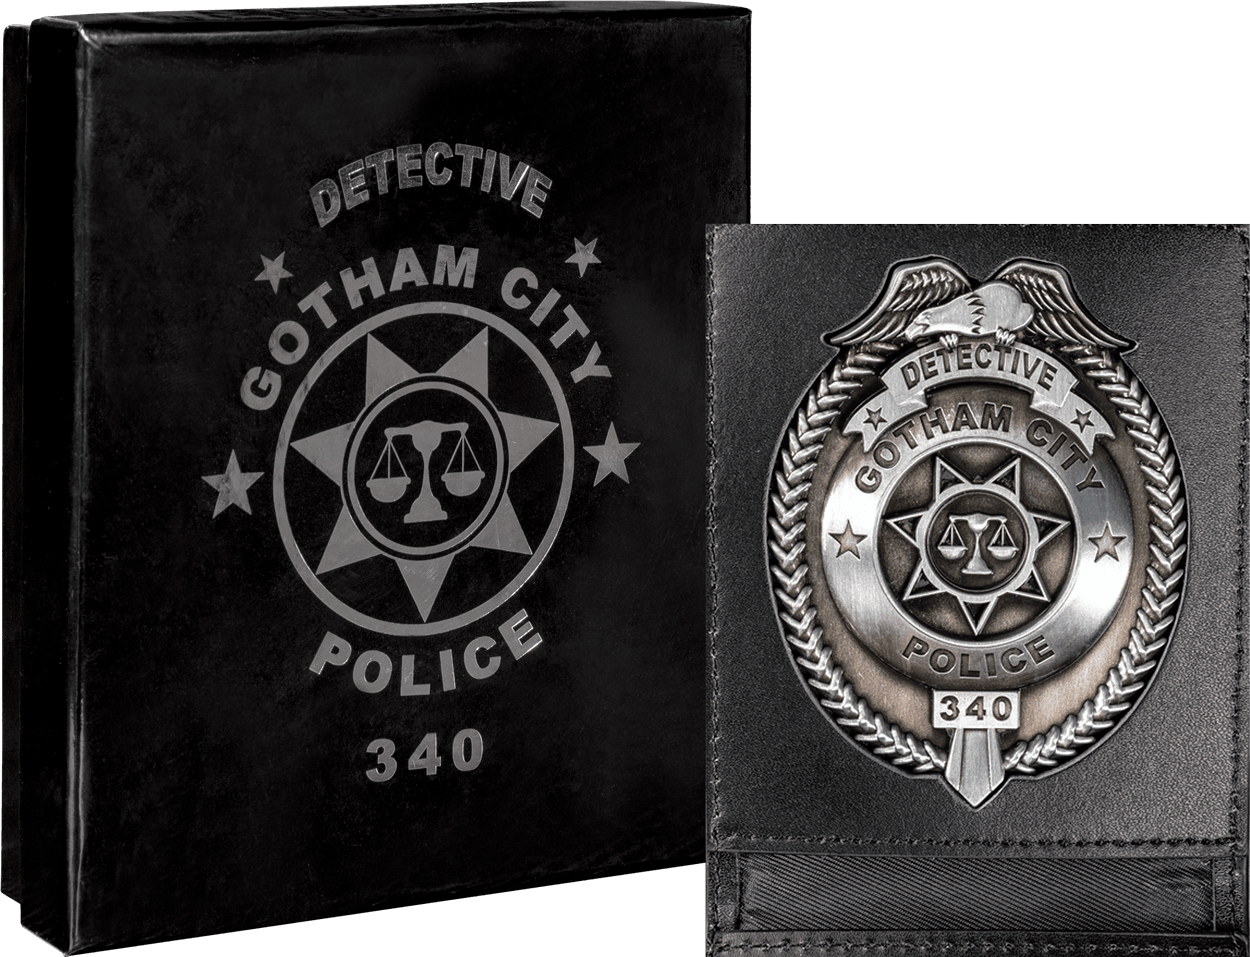 IKO1608 Batman - Gotham City Police Department Badge Replica - Ikon Collectables - Titan Pop Culture